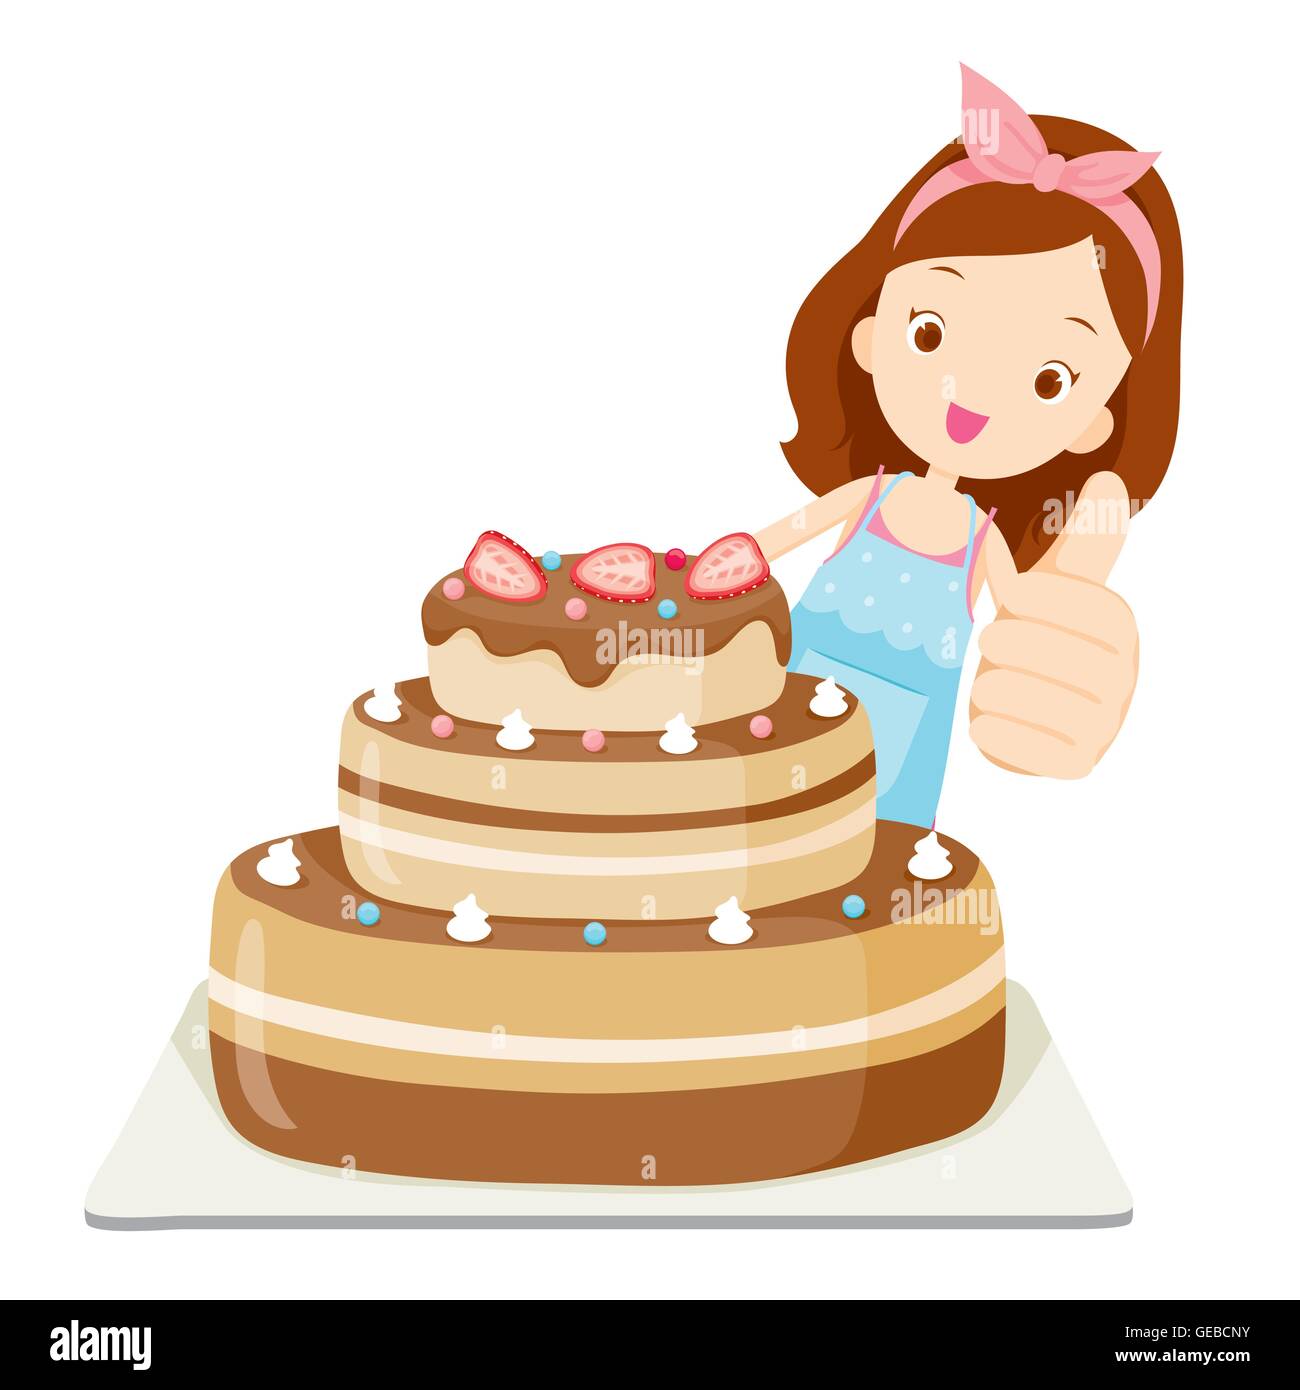 Grand gâteau avec Girl Thump, cuisine, ustensiles de cuisine, vaisselle, cuisine, alimentation, boulangerie, la profession, le mode de vie Illustration de Vecteur